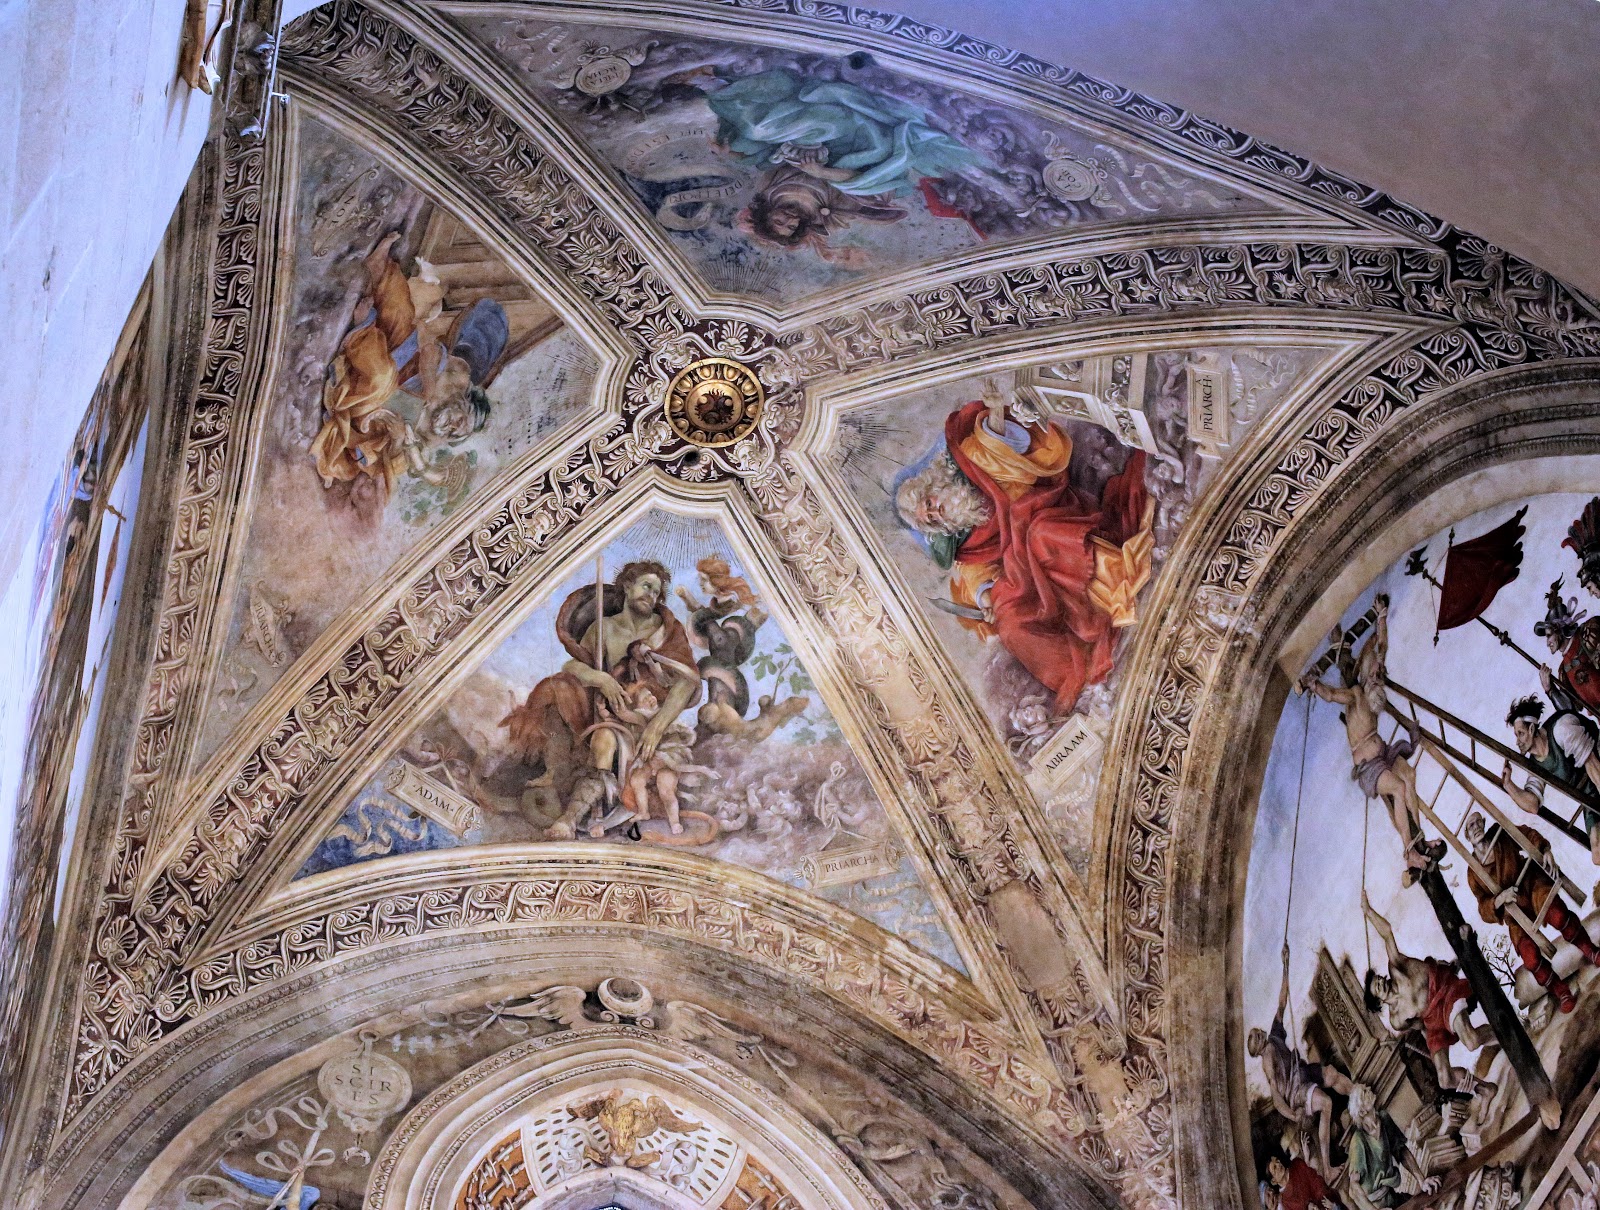 Filippino+Lippi-1457-1504 (20).jpg